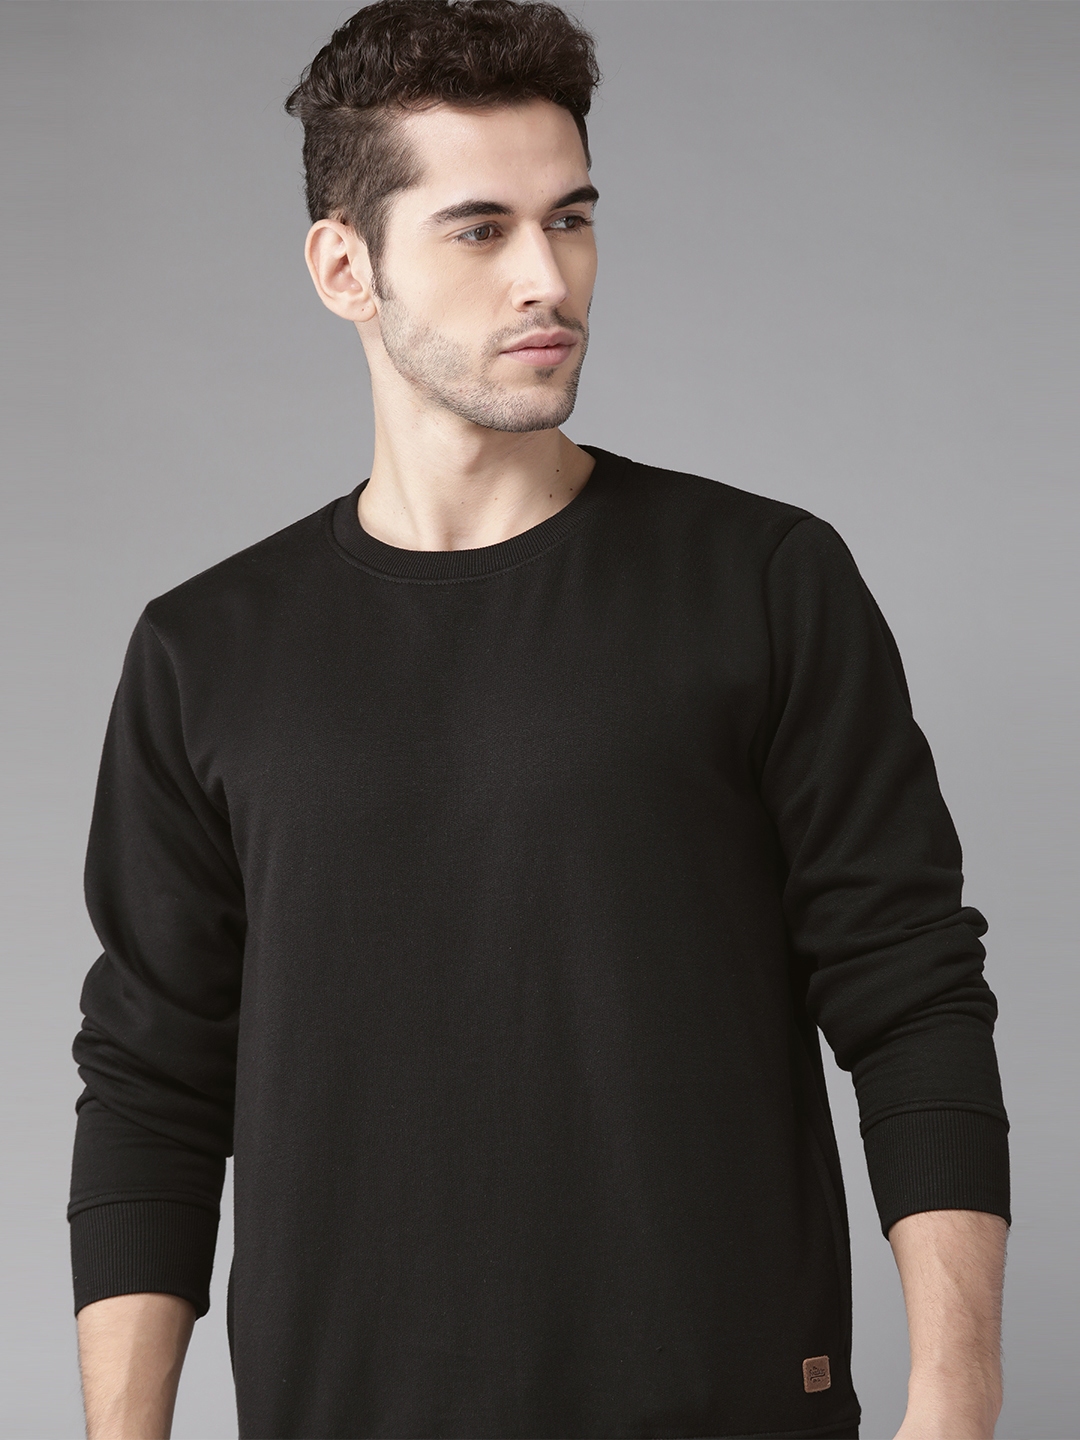 Buy Roadster Men Black Solid Sweatshirt - Sweatshirts for Men 12111390 ...